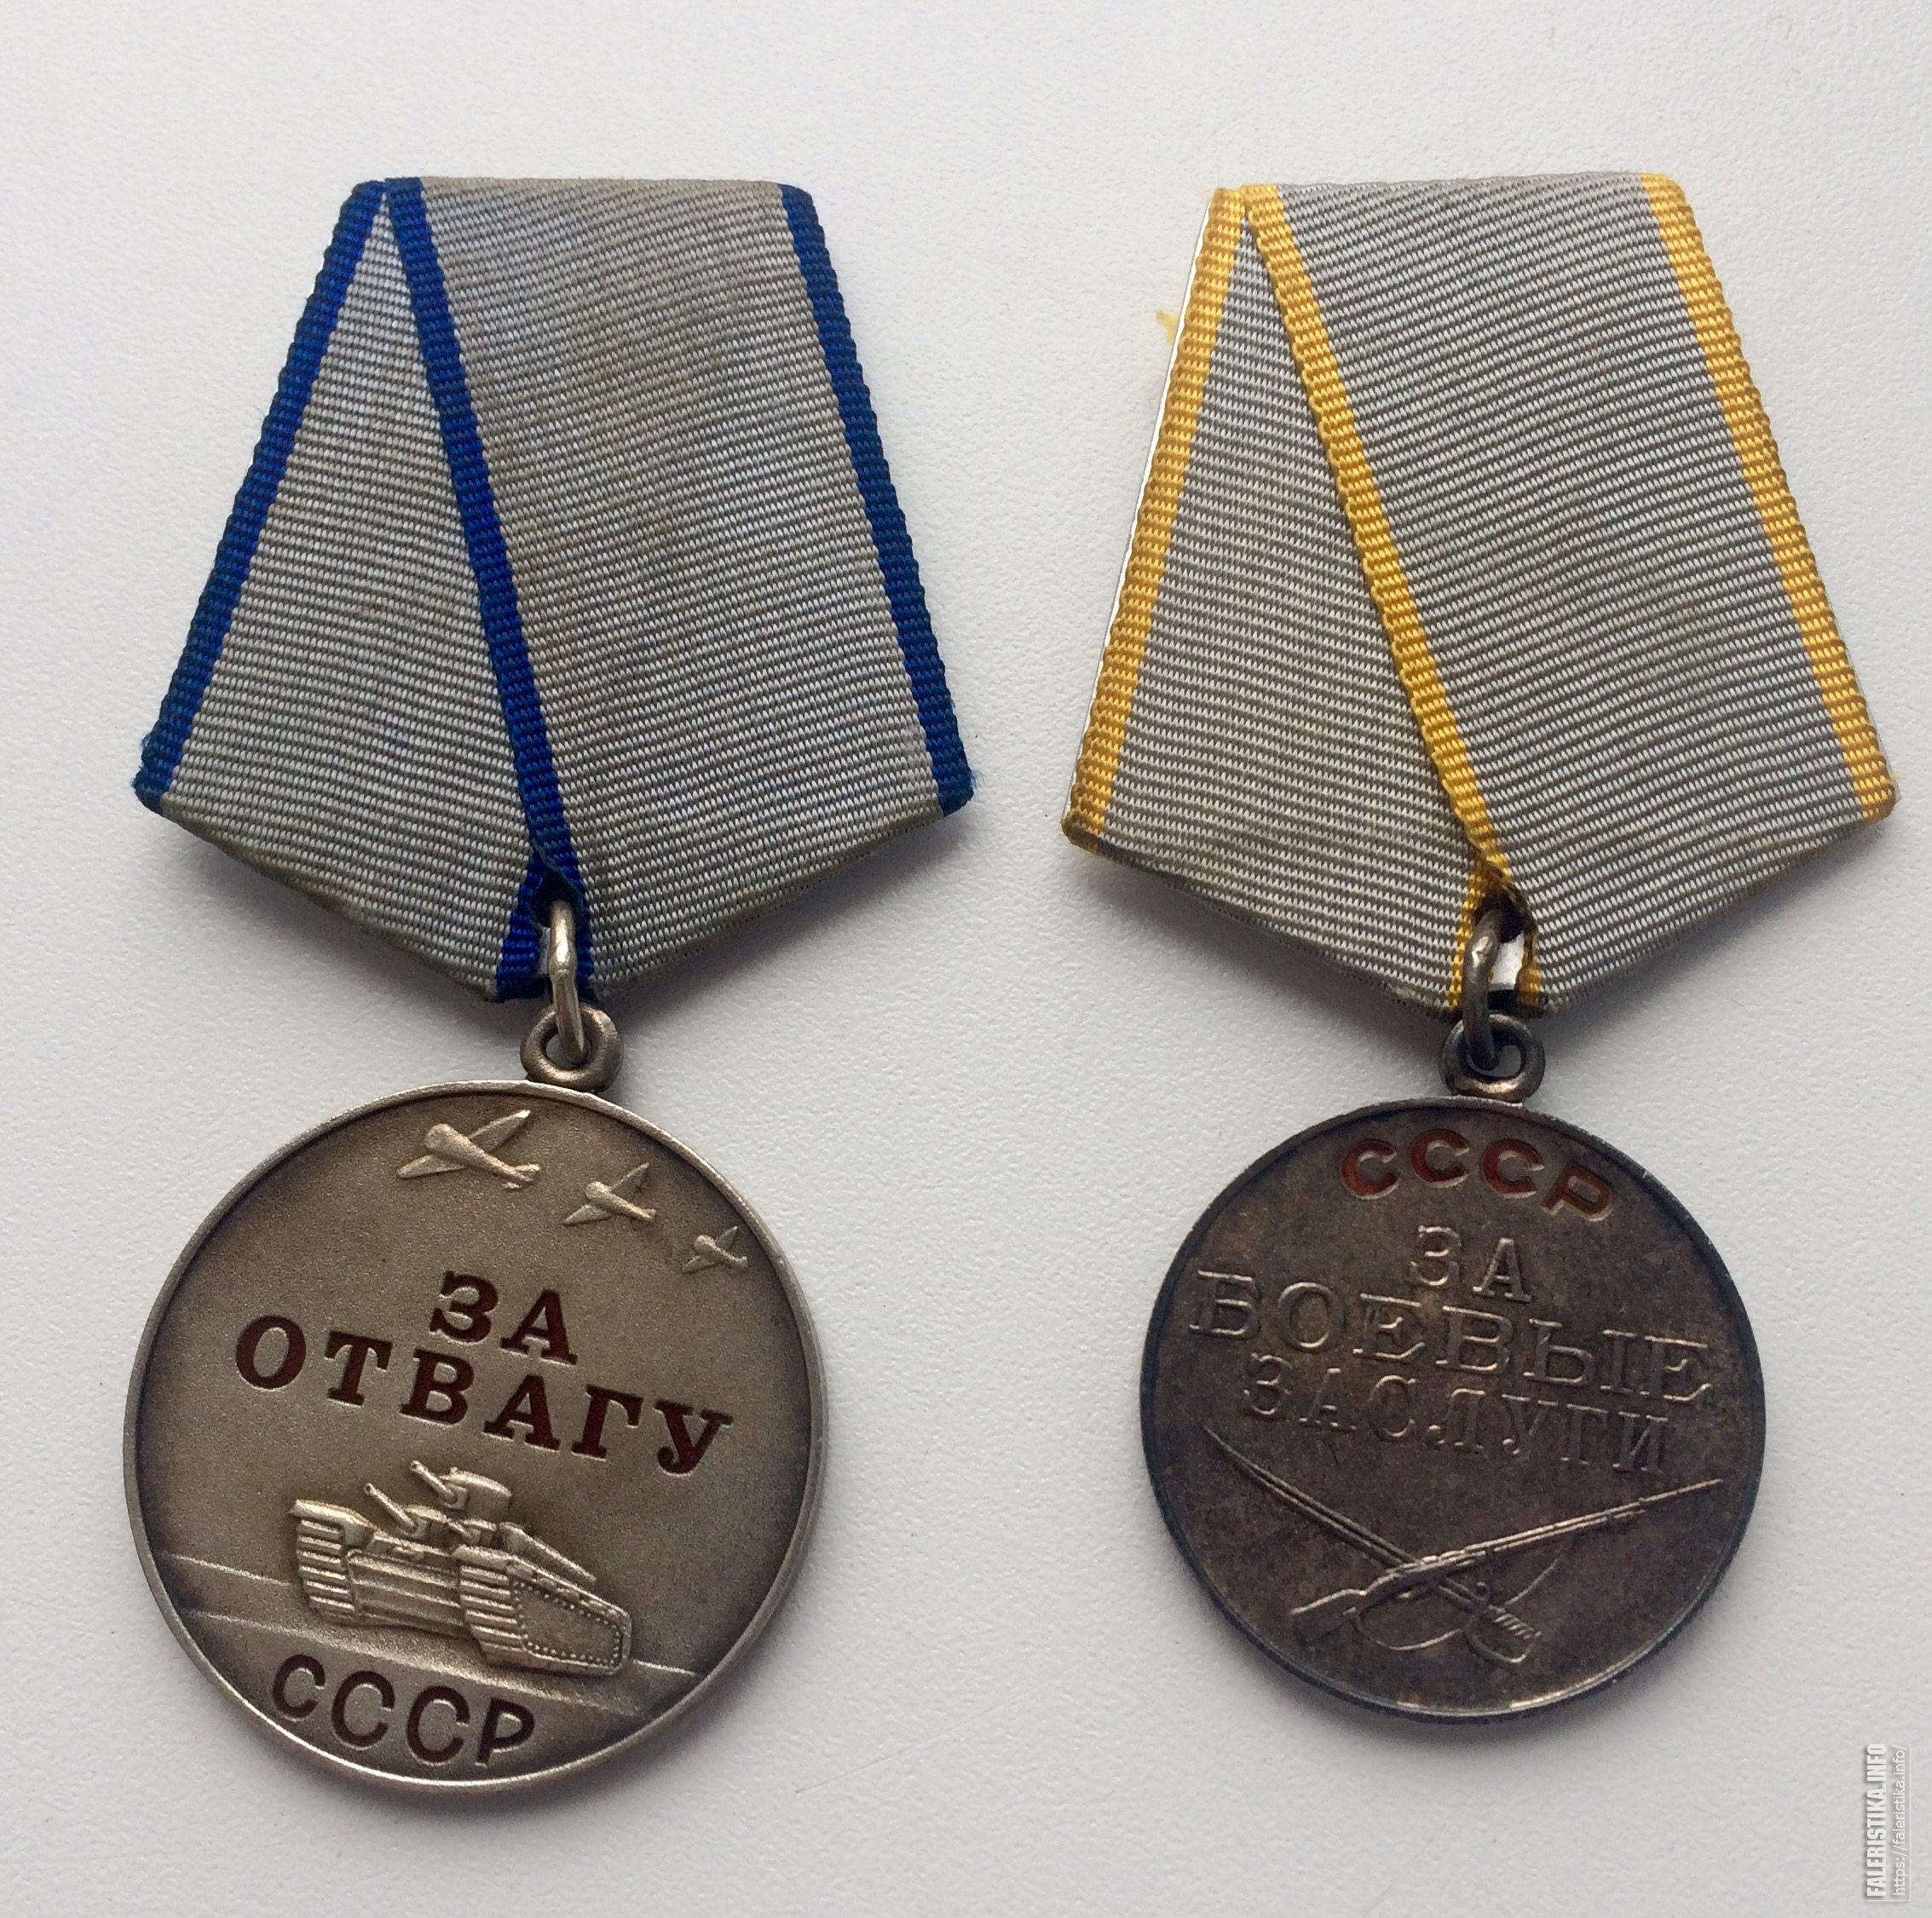 Сколько стоят награды. Медаль за отвагу 1995 год. Медаль за отвагу 1944. Медаль за отвагу СССР 1944. Медаль за отвагу 1941.